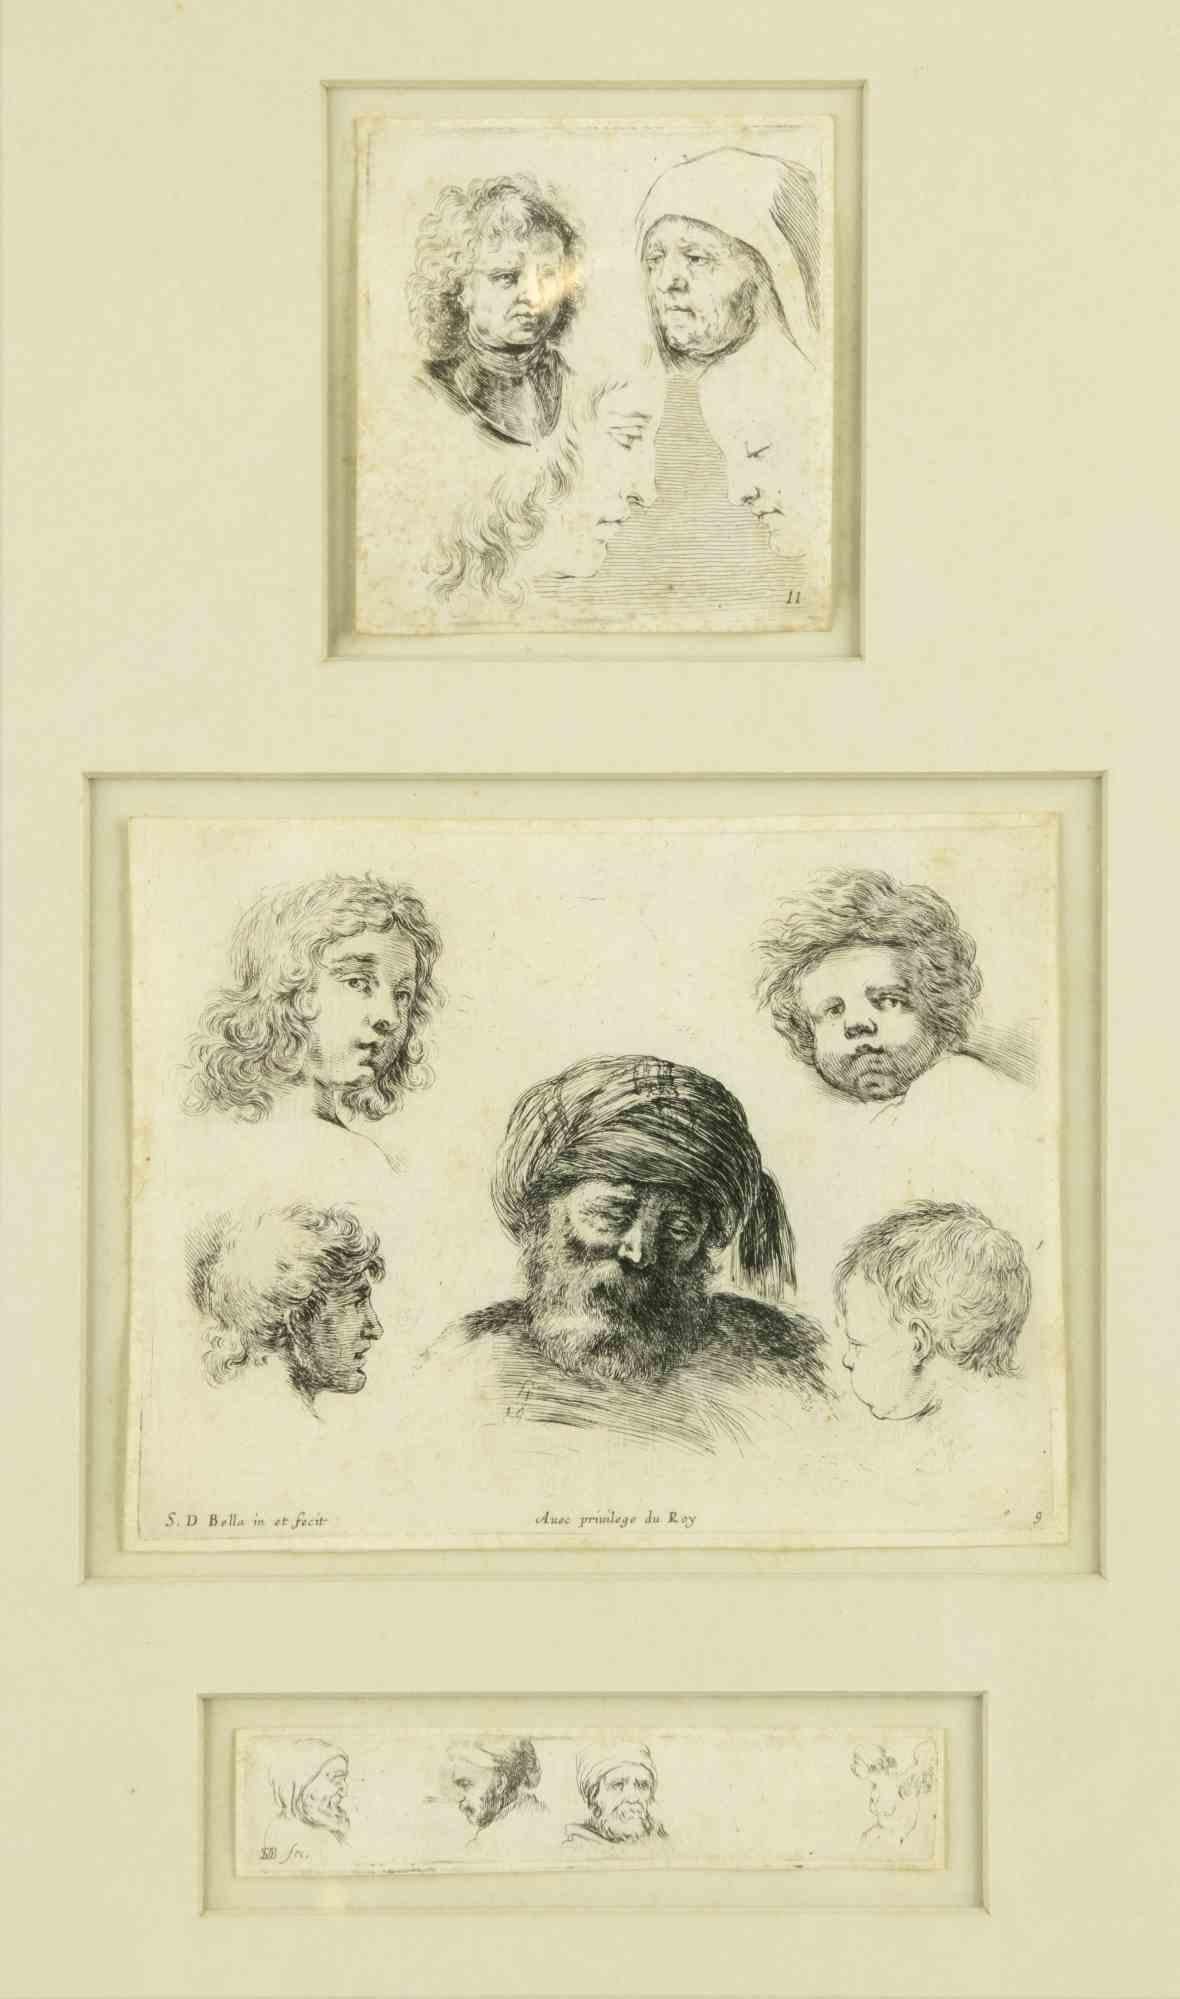 Die Studie der Gesichter ist ein originales altmeisterliches Kunstwerk von Stefano Della bella aus dem 17.

Schwarze und weiße Radierung. Die Radierung ist in 2 Scheiben unterteilt, deren Maße von oben sind: 8 x 8 cm und 2 x 12 cm

Einschließlich